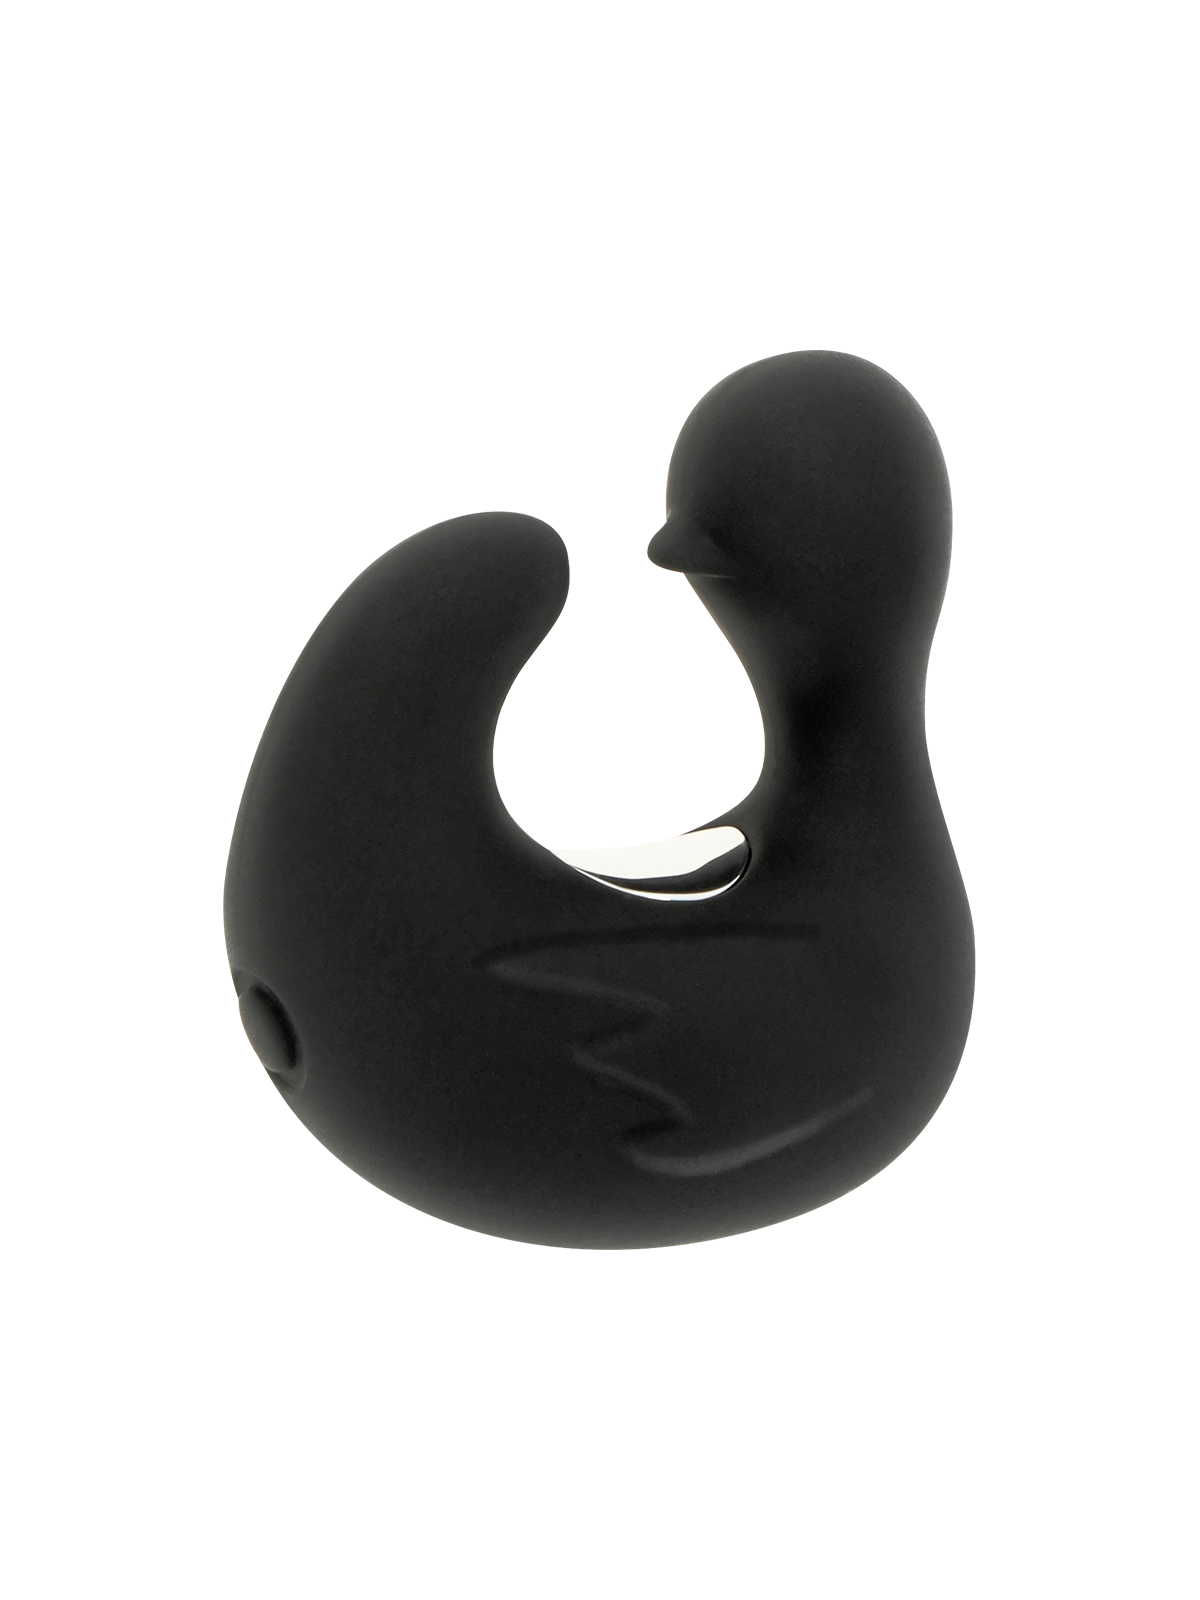 Black&Silver Dedal Estimulador De Silicona Recargable Duckymania - Comprar Dedo vibrador Black&Silver - Vibradores de dedo (1)